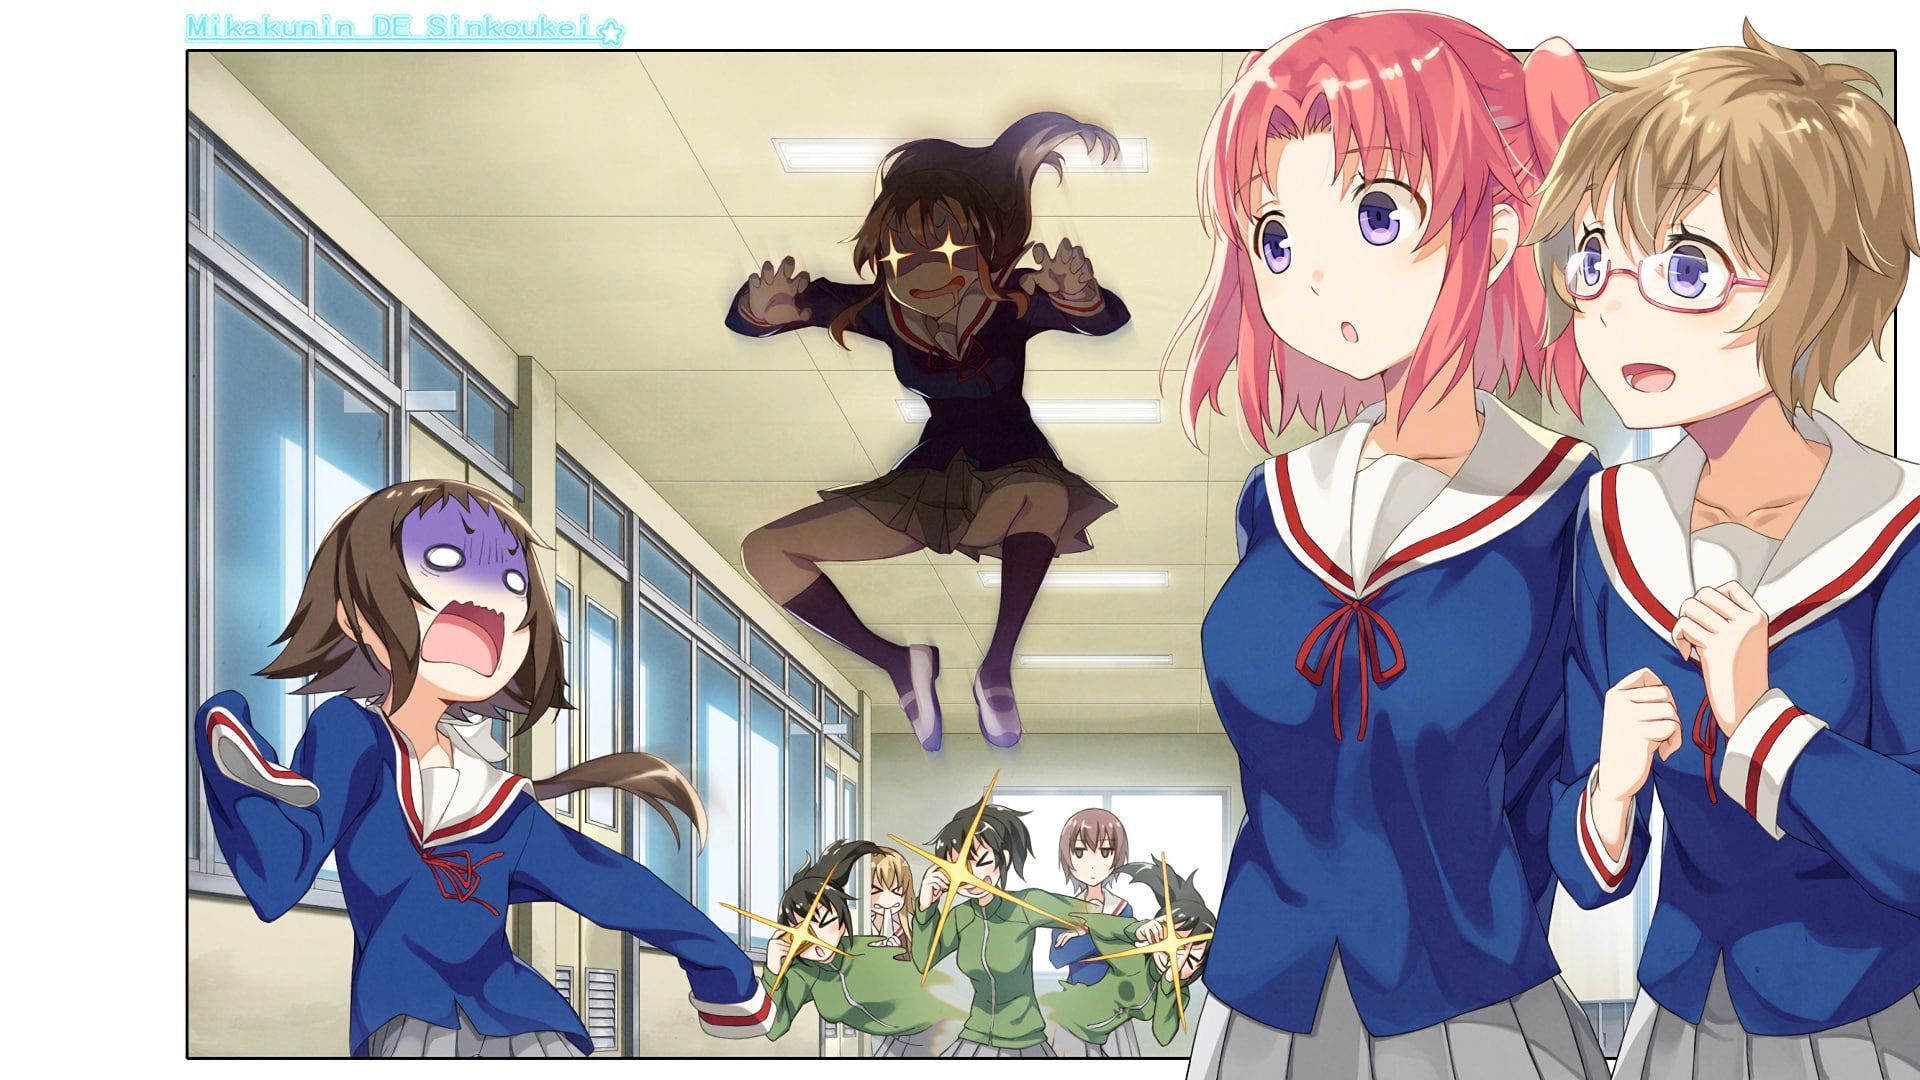 HD wallpaper: anime girls, Mikakunin de Shinkoukei, Mitsumine Mashiro,  representation